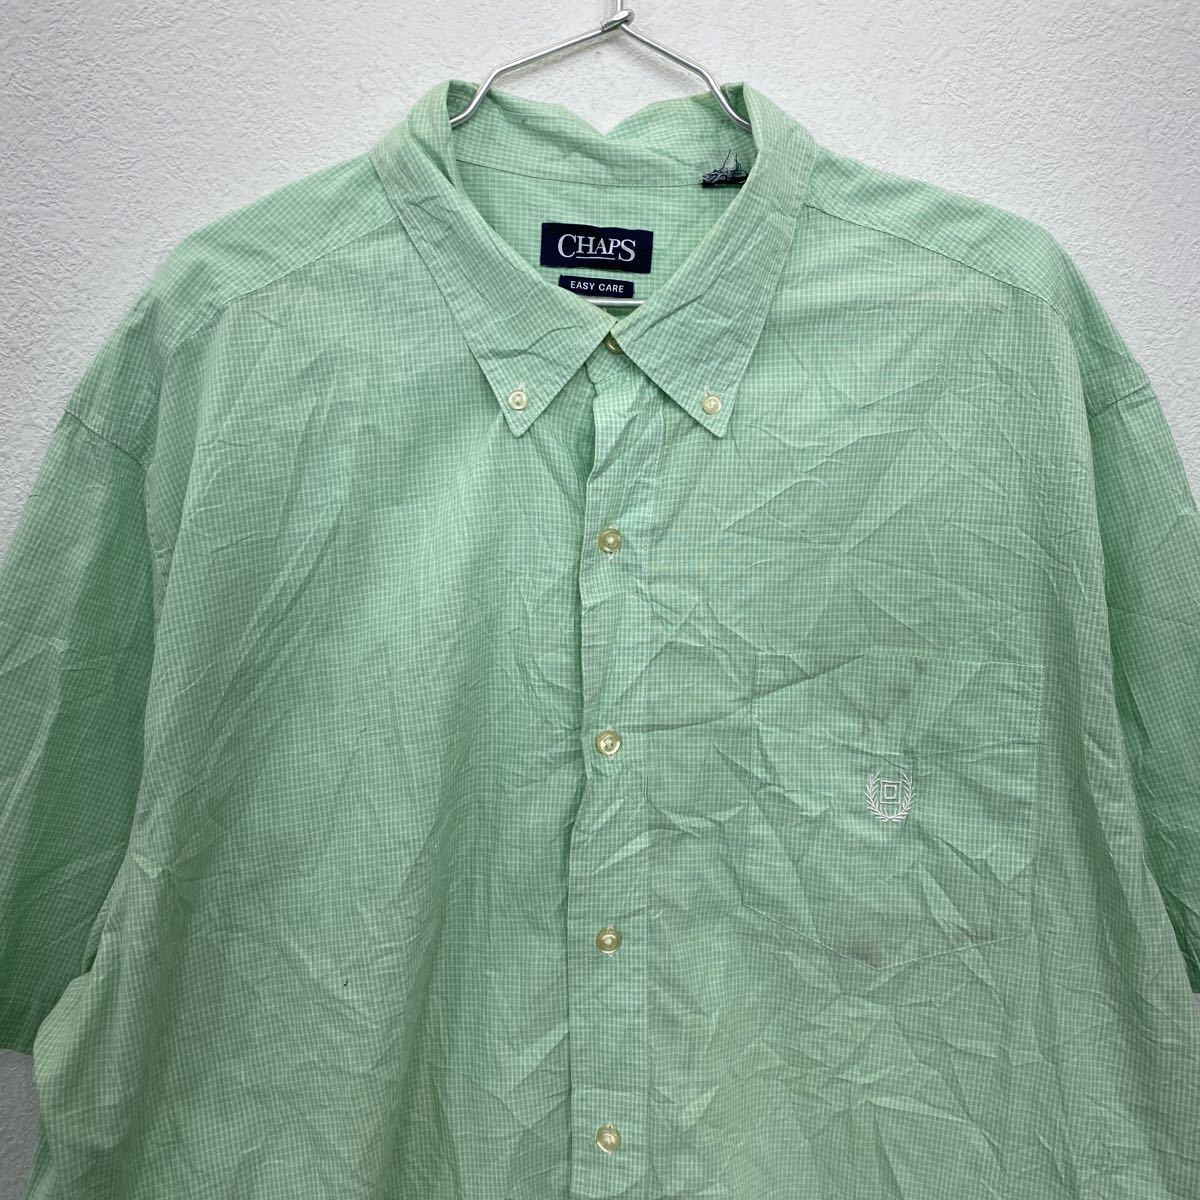 【大人気☆】チャップス ワンポイント 半袖BDシャツ チェック グリーン XL